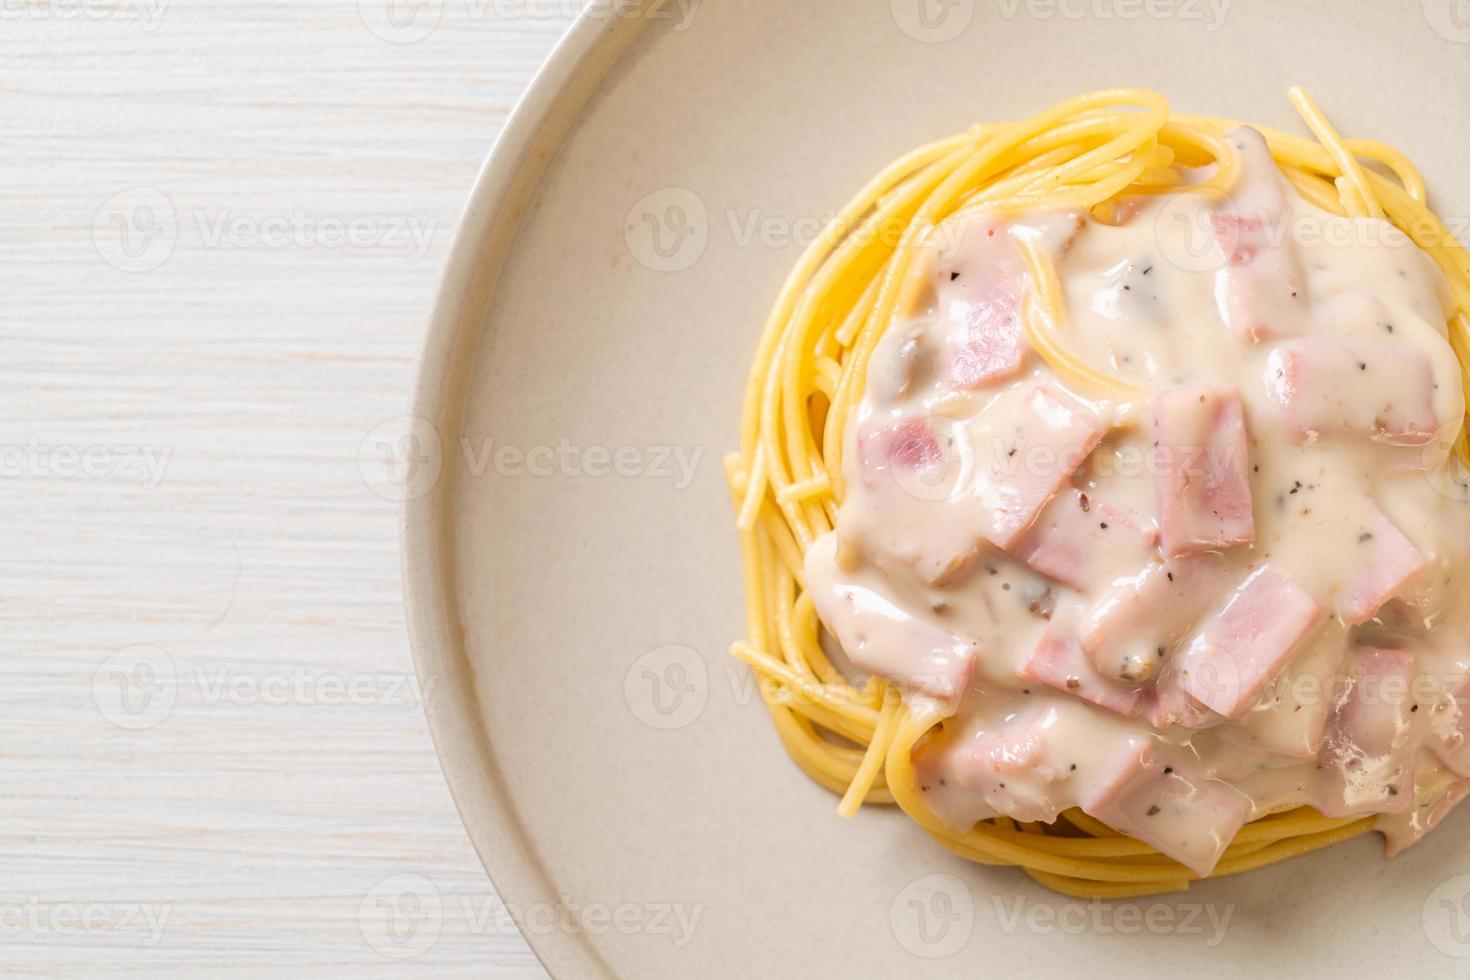 hemlagad vit spagetti gräddsås med skinka - italiensk matstil foto